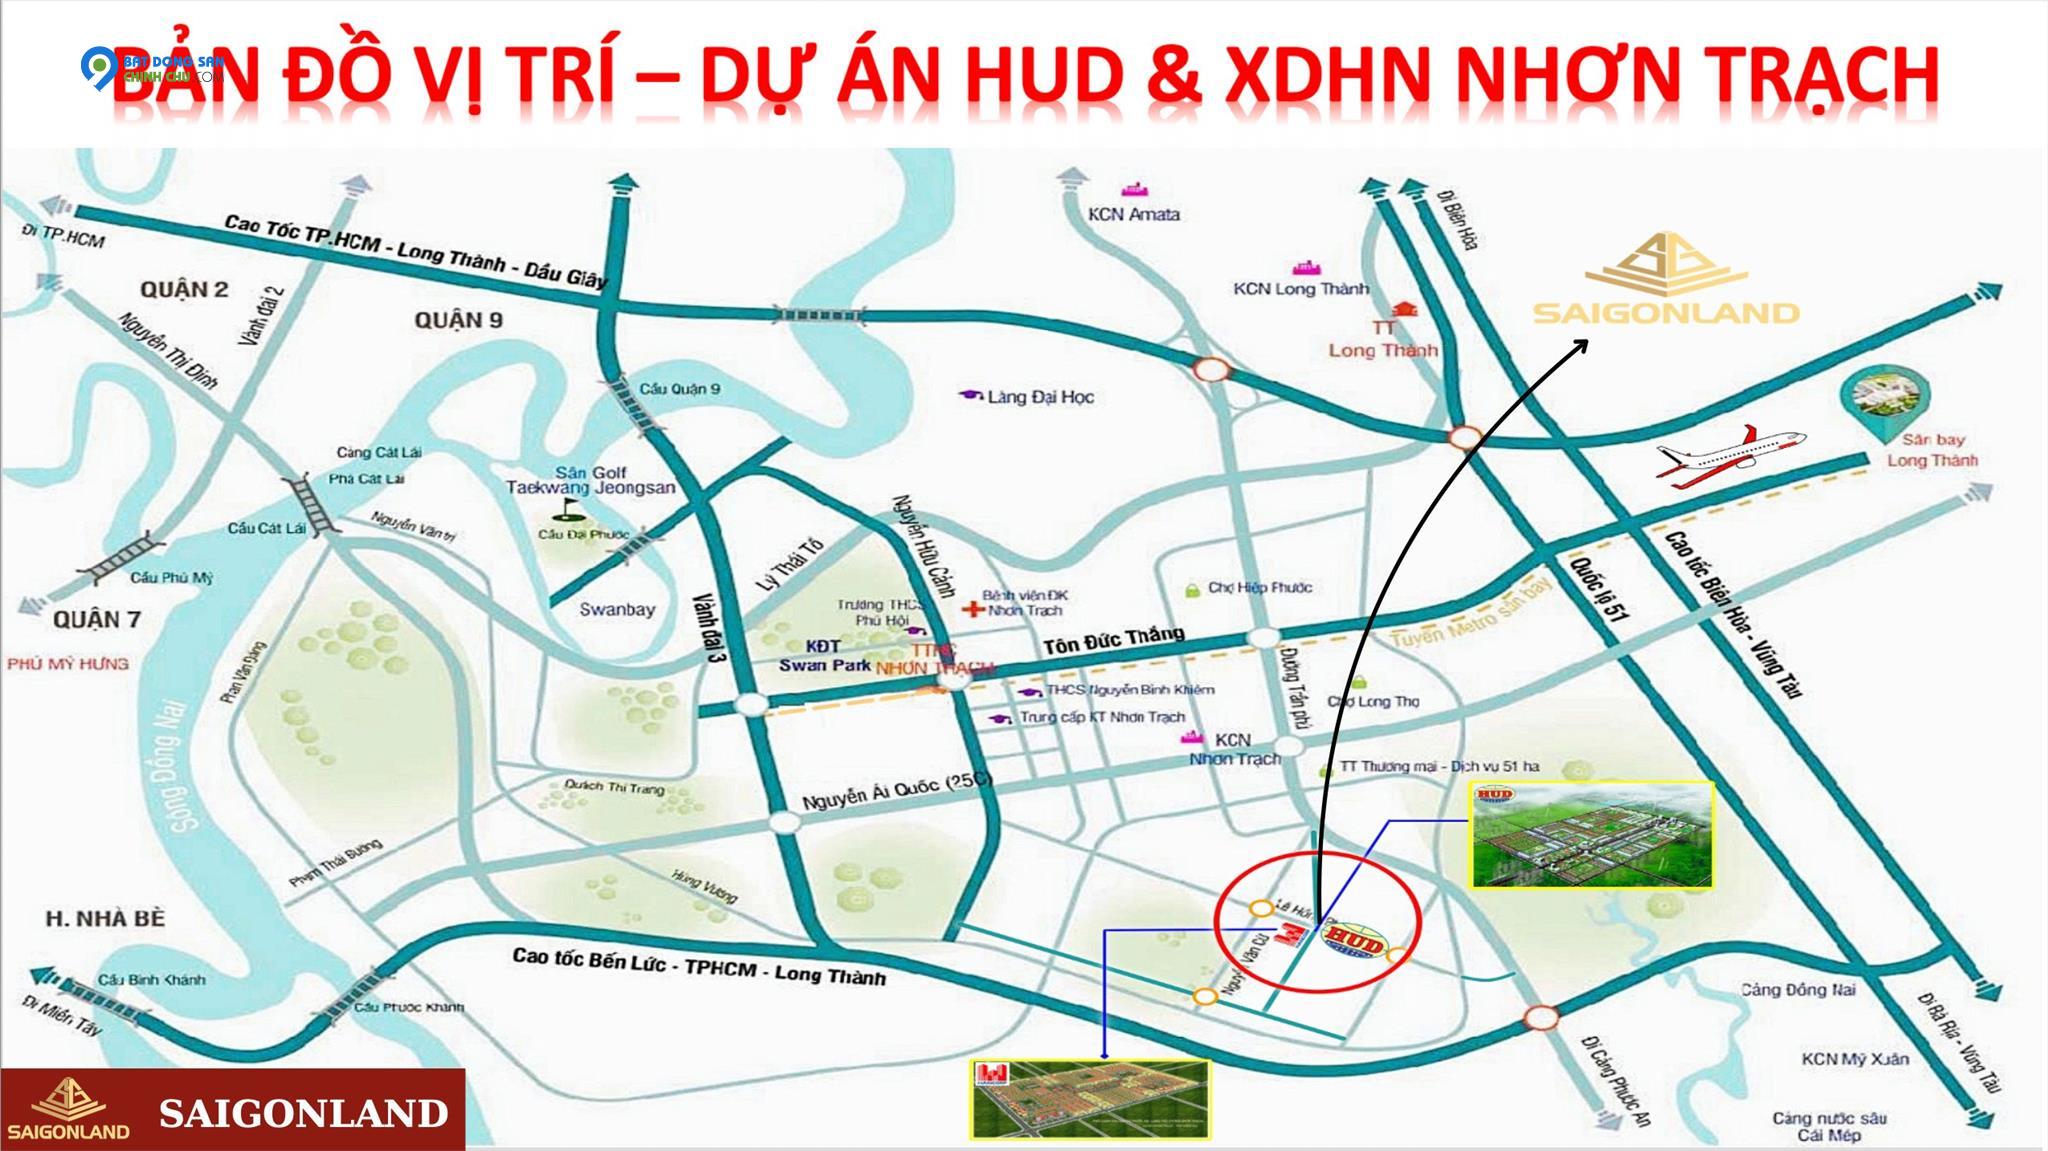 Saigonland Nhơn Trạch - Bán nền nhà vườn dự án Hud Nhơn Trạch Đồng Nai